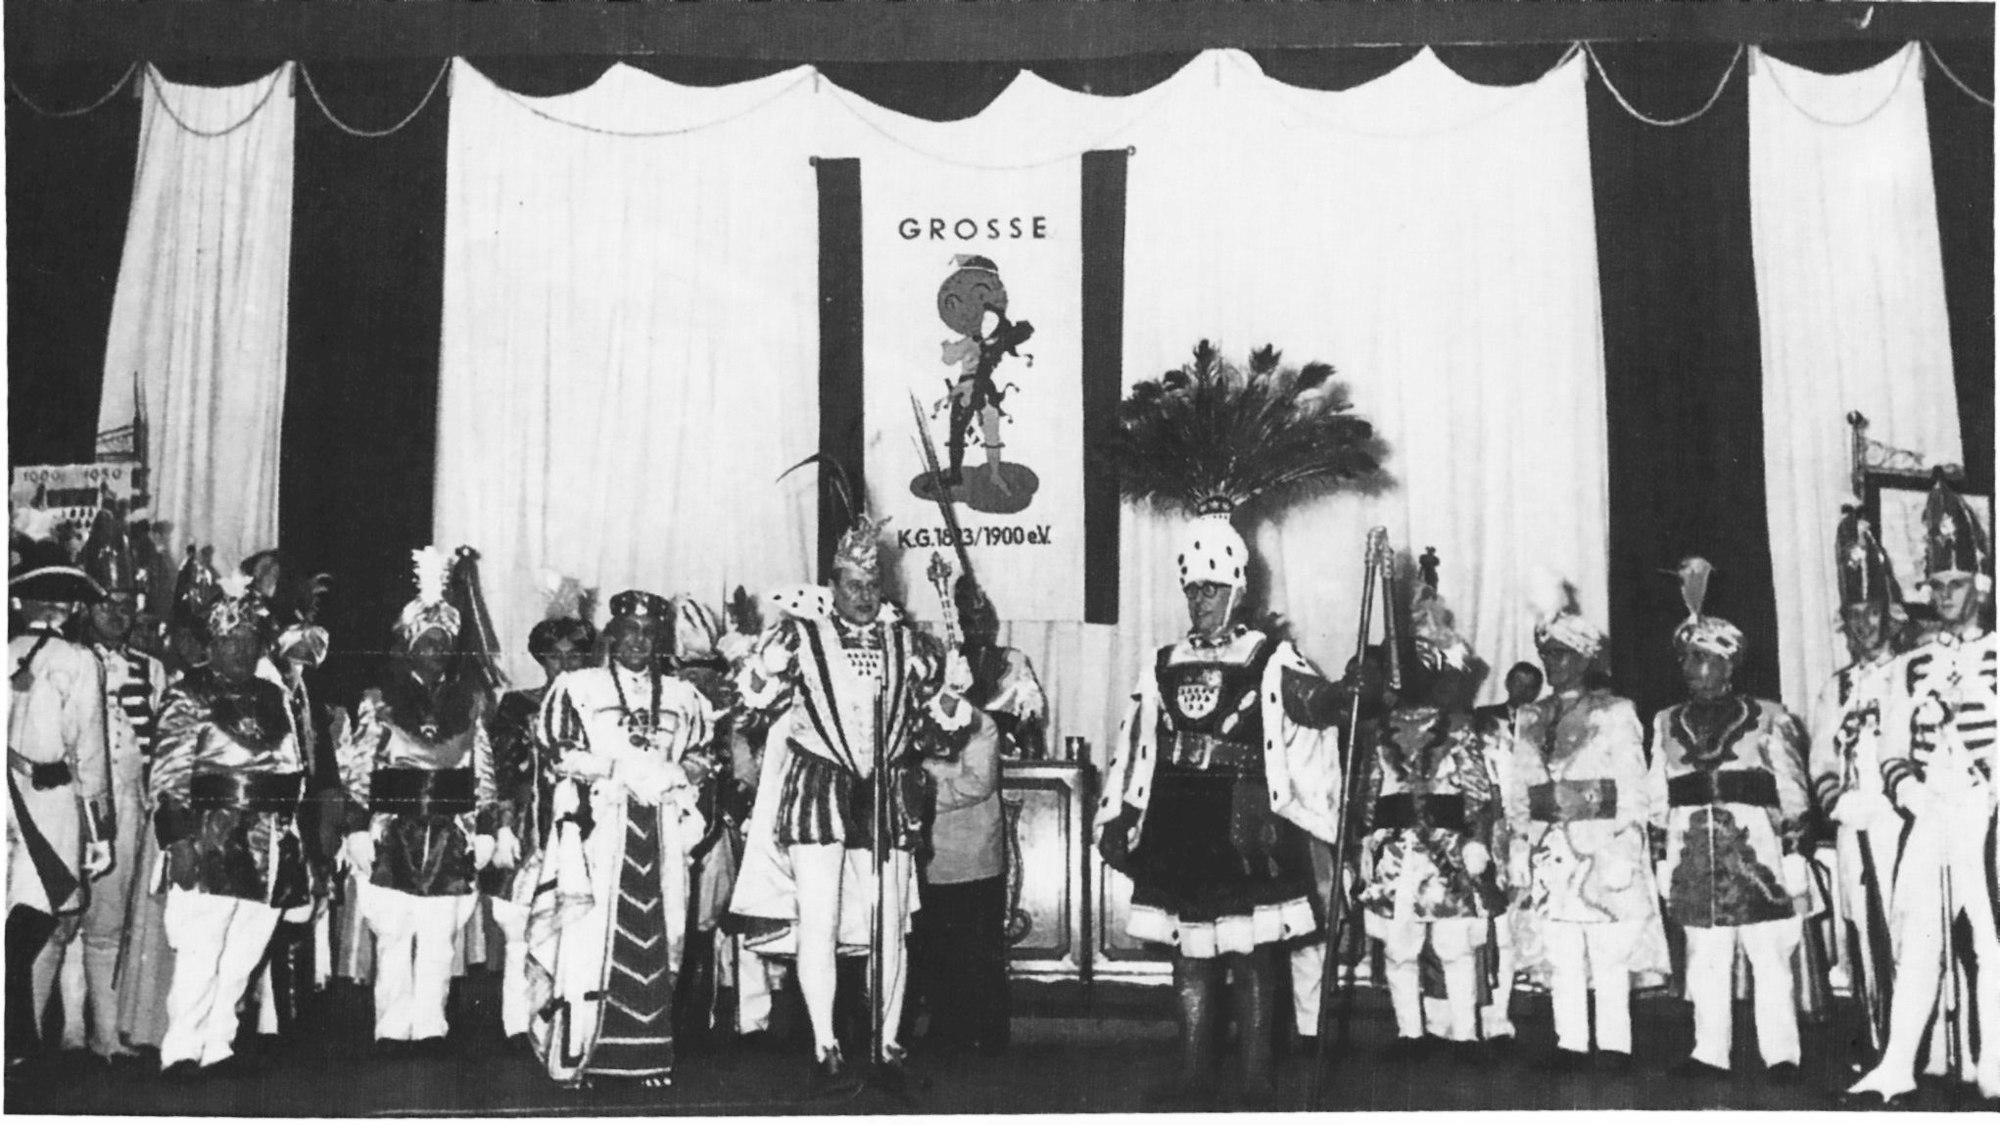 Das Schwarz-Weiß-Bild zeigt die erste Sitzung der Grossen nach dem Krieg im Gürzenich 1956. Zu Gast ist das Kölner Dreigestirn.